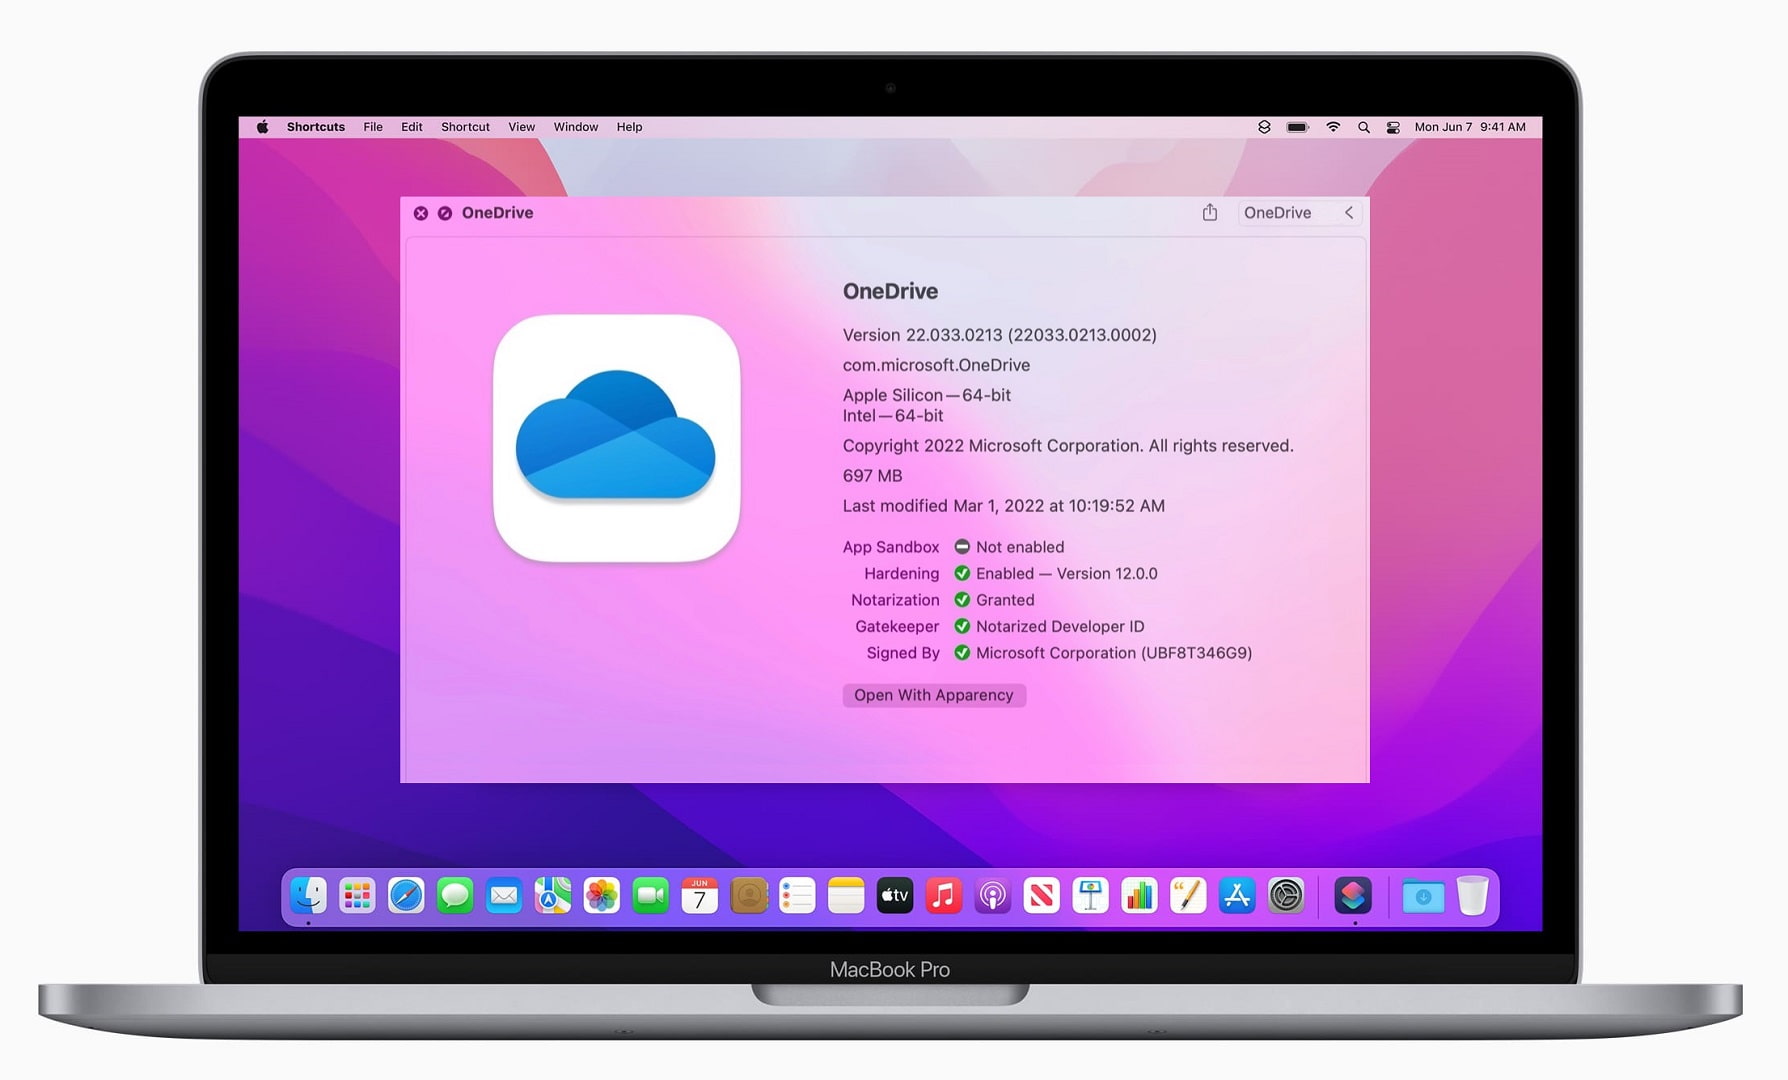 ¿Puedo usar OneDrive en una Mac?